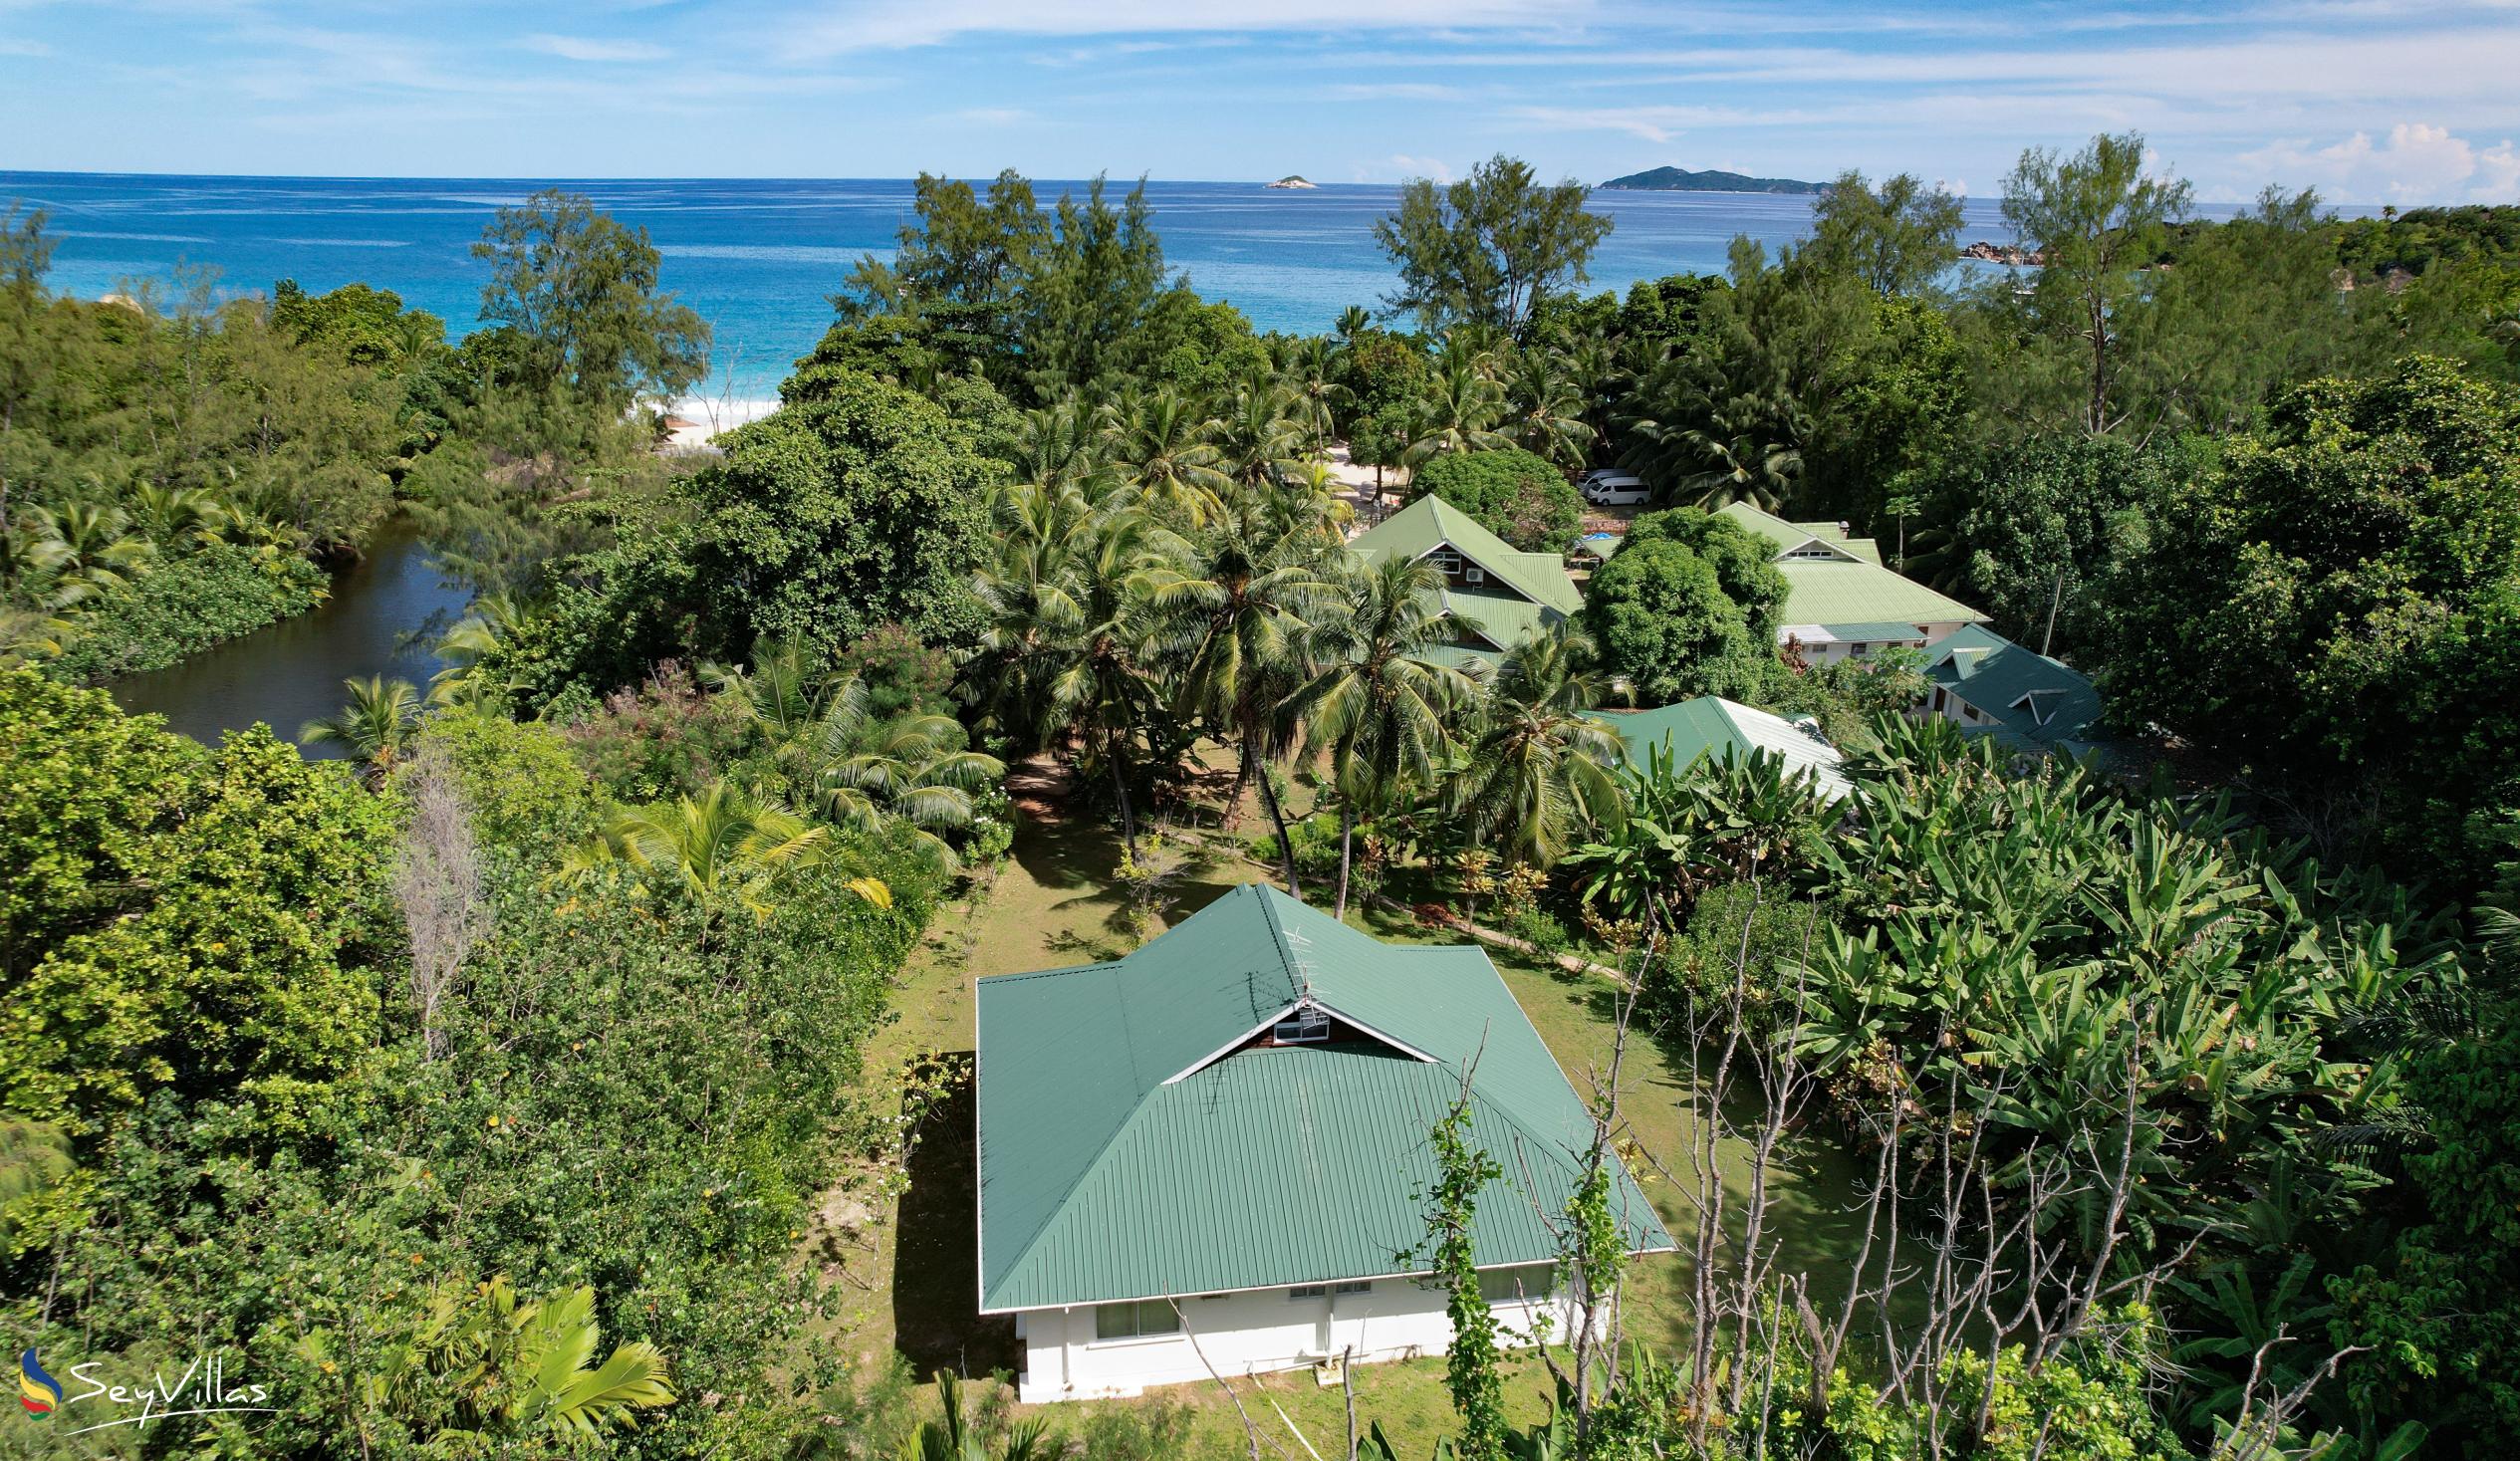 Foto 6: Le Chevalier Bay Guesthouse - Aussenbereich - Praslin (Seychellen)